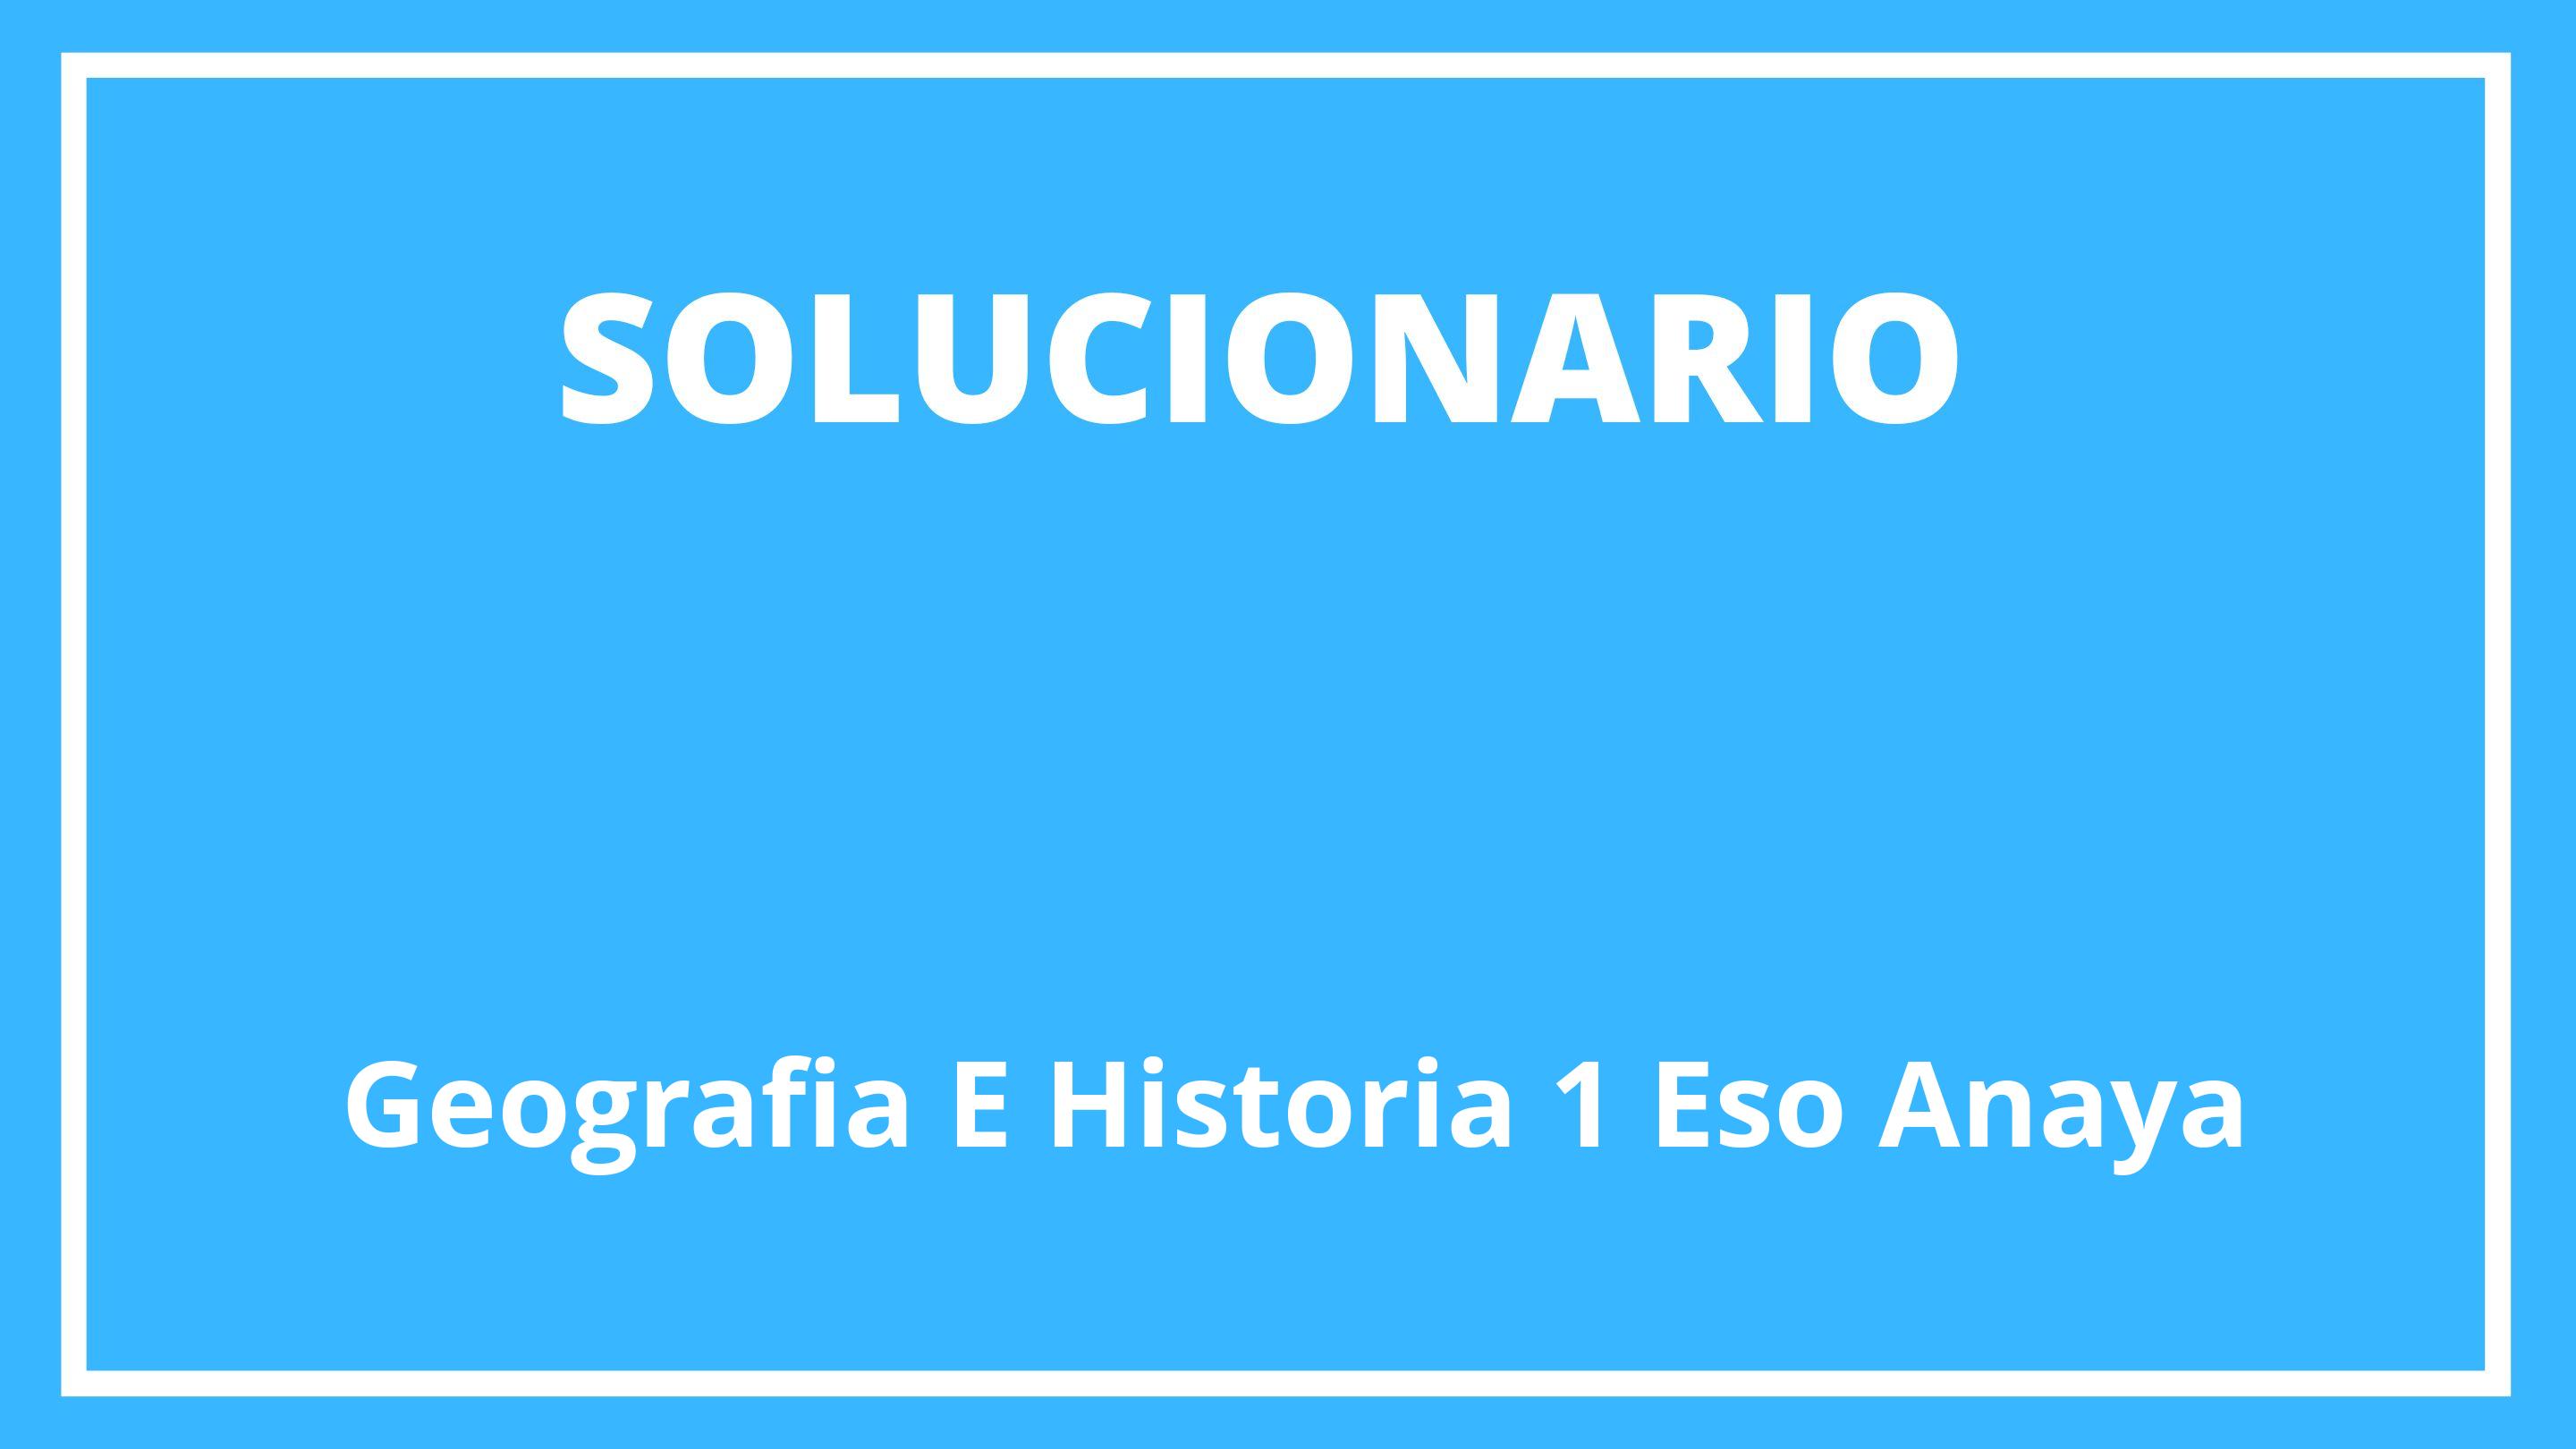 Solucionario Geografía E Historia 1 Eso Anaya